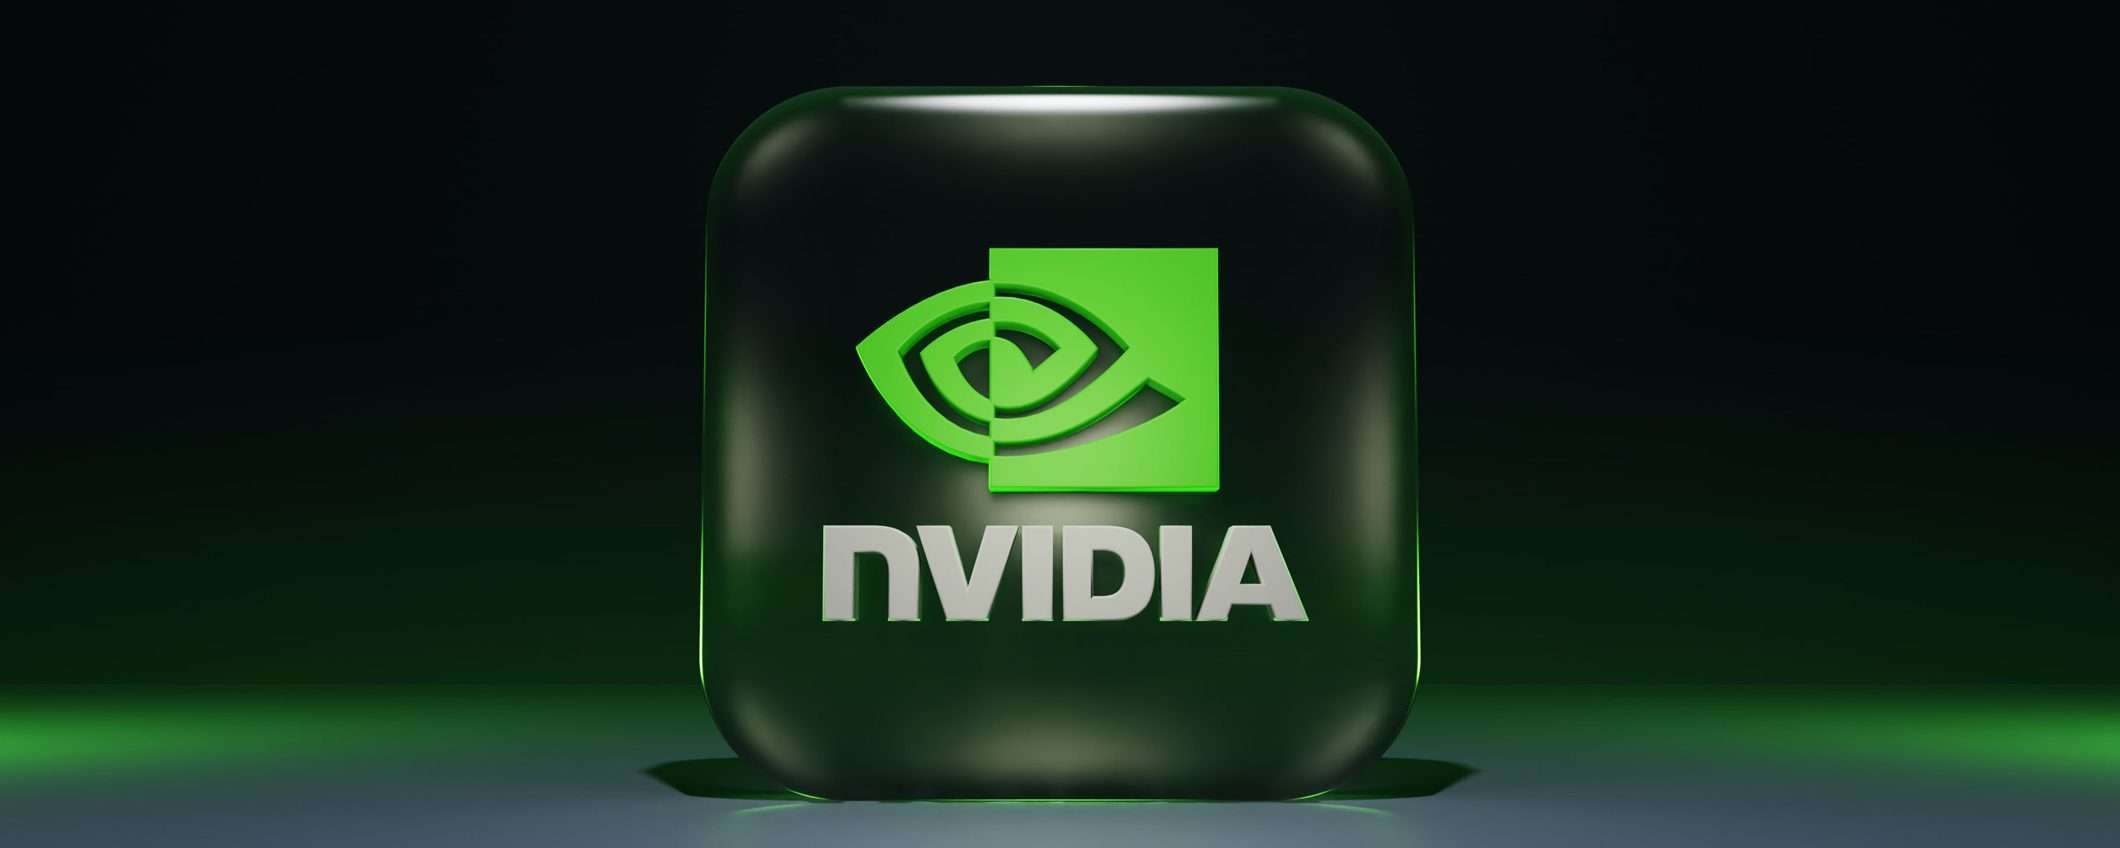 NVIDIA: posizione dominante nel settore delle GPU?